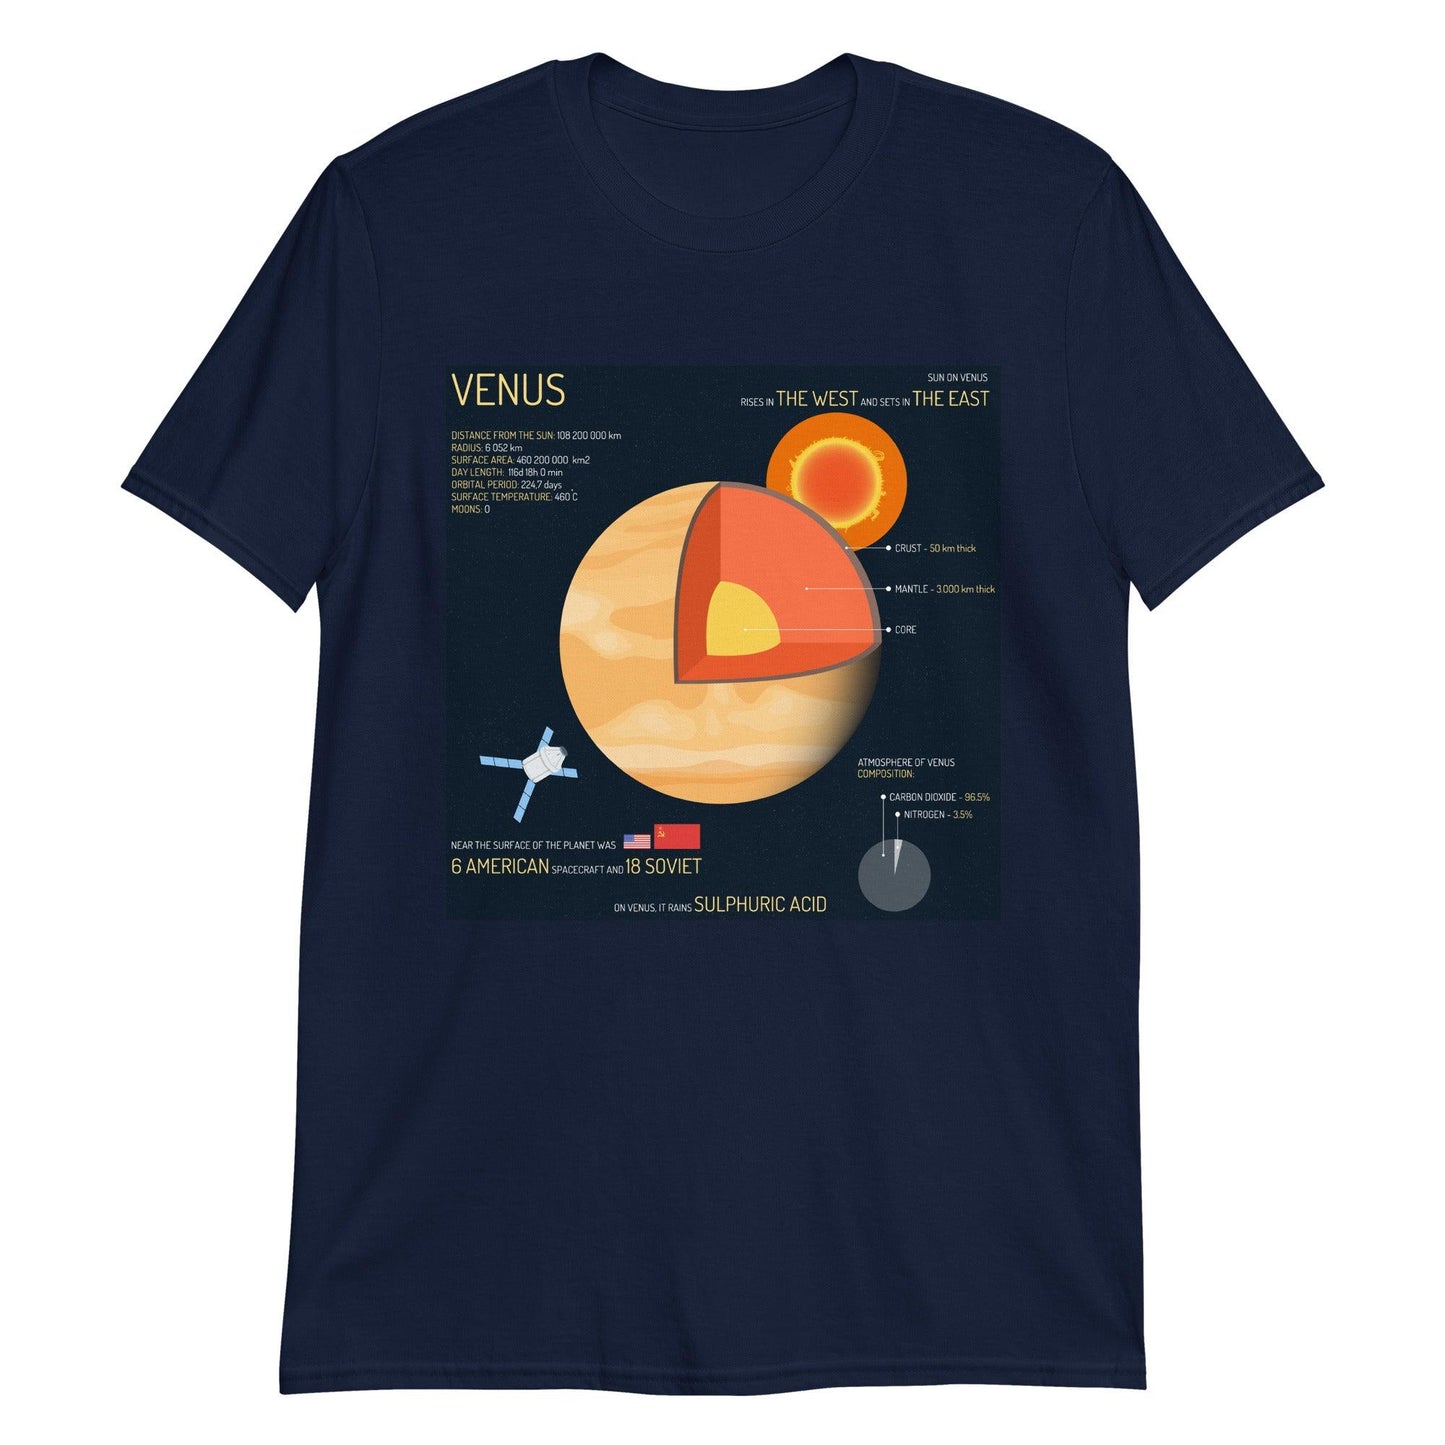 Venus - Astro TShirts